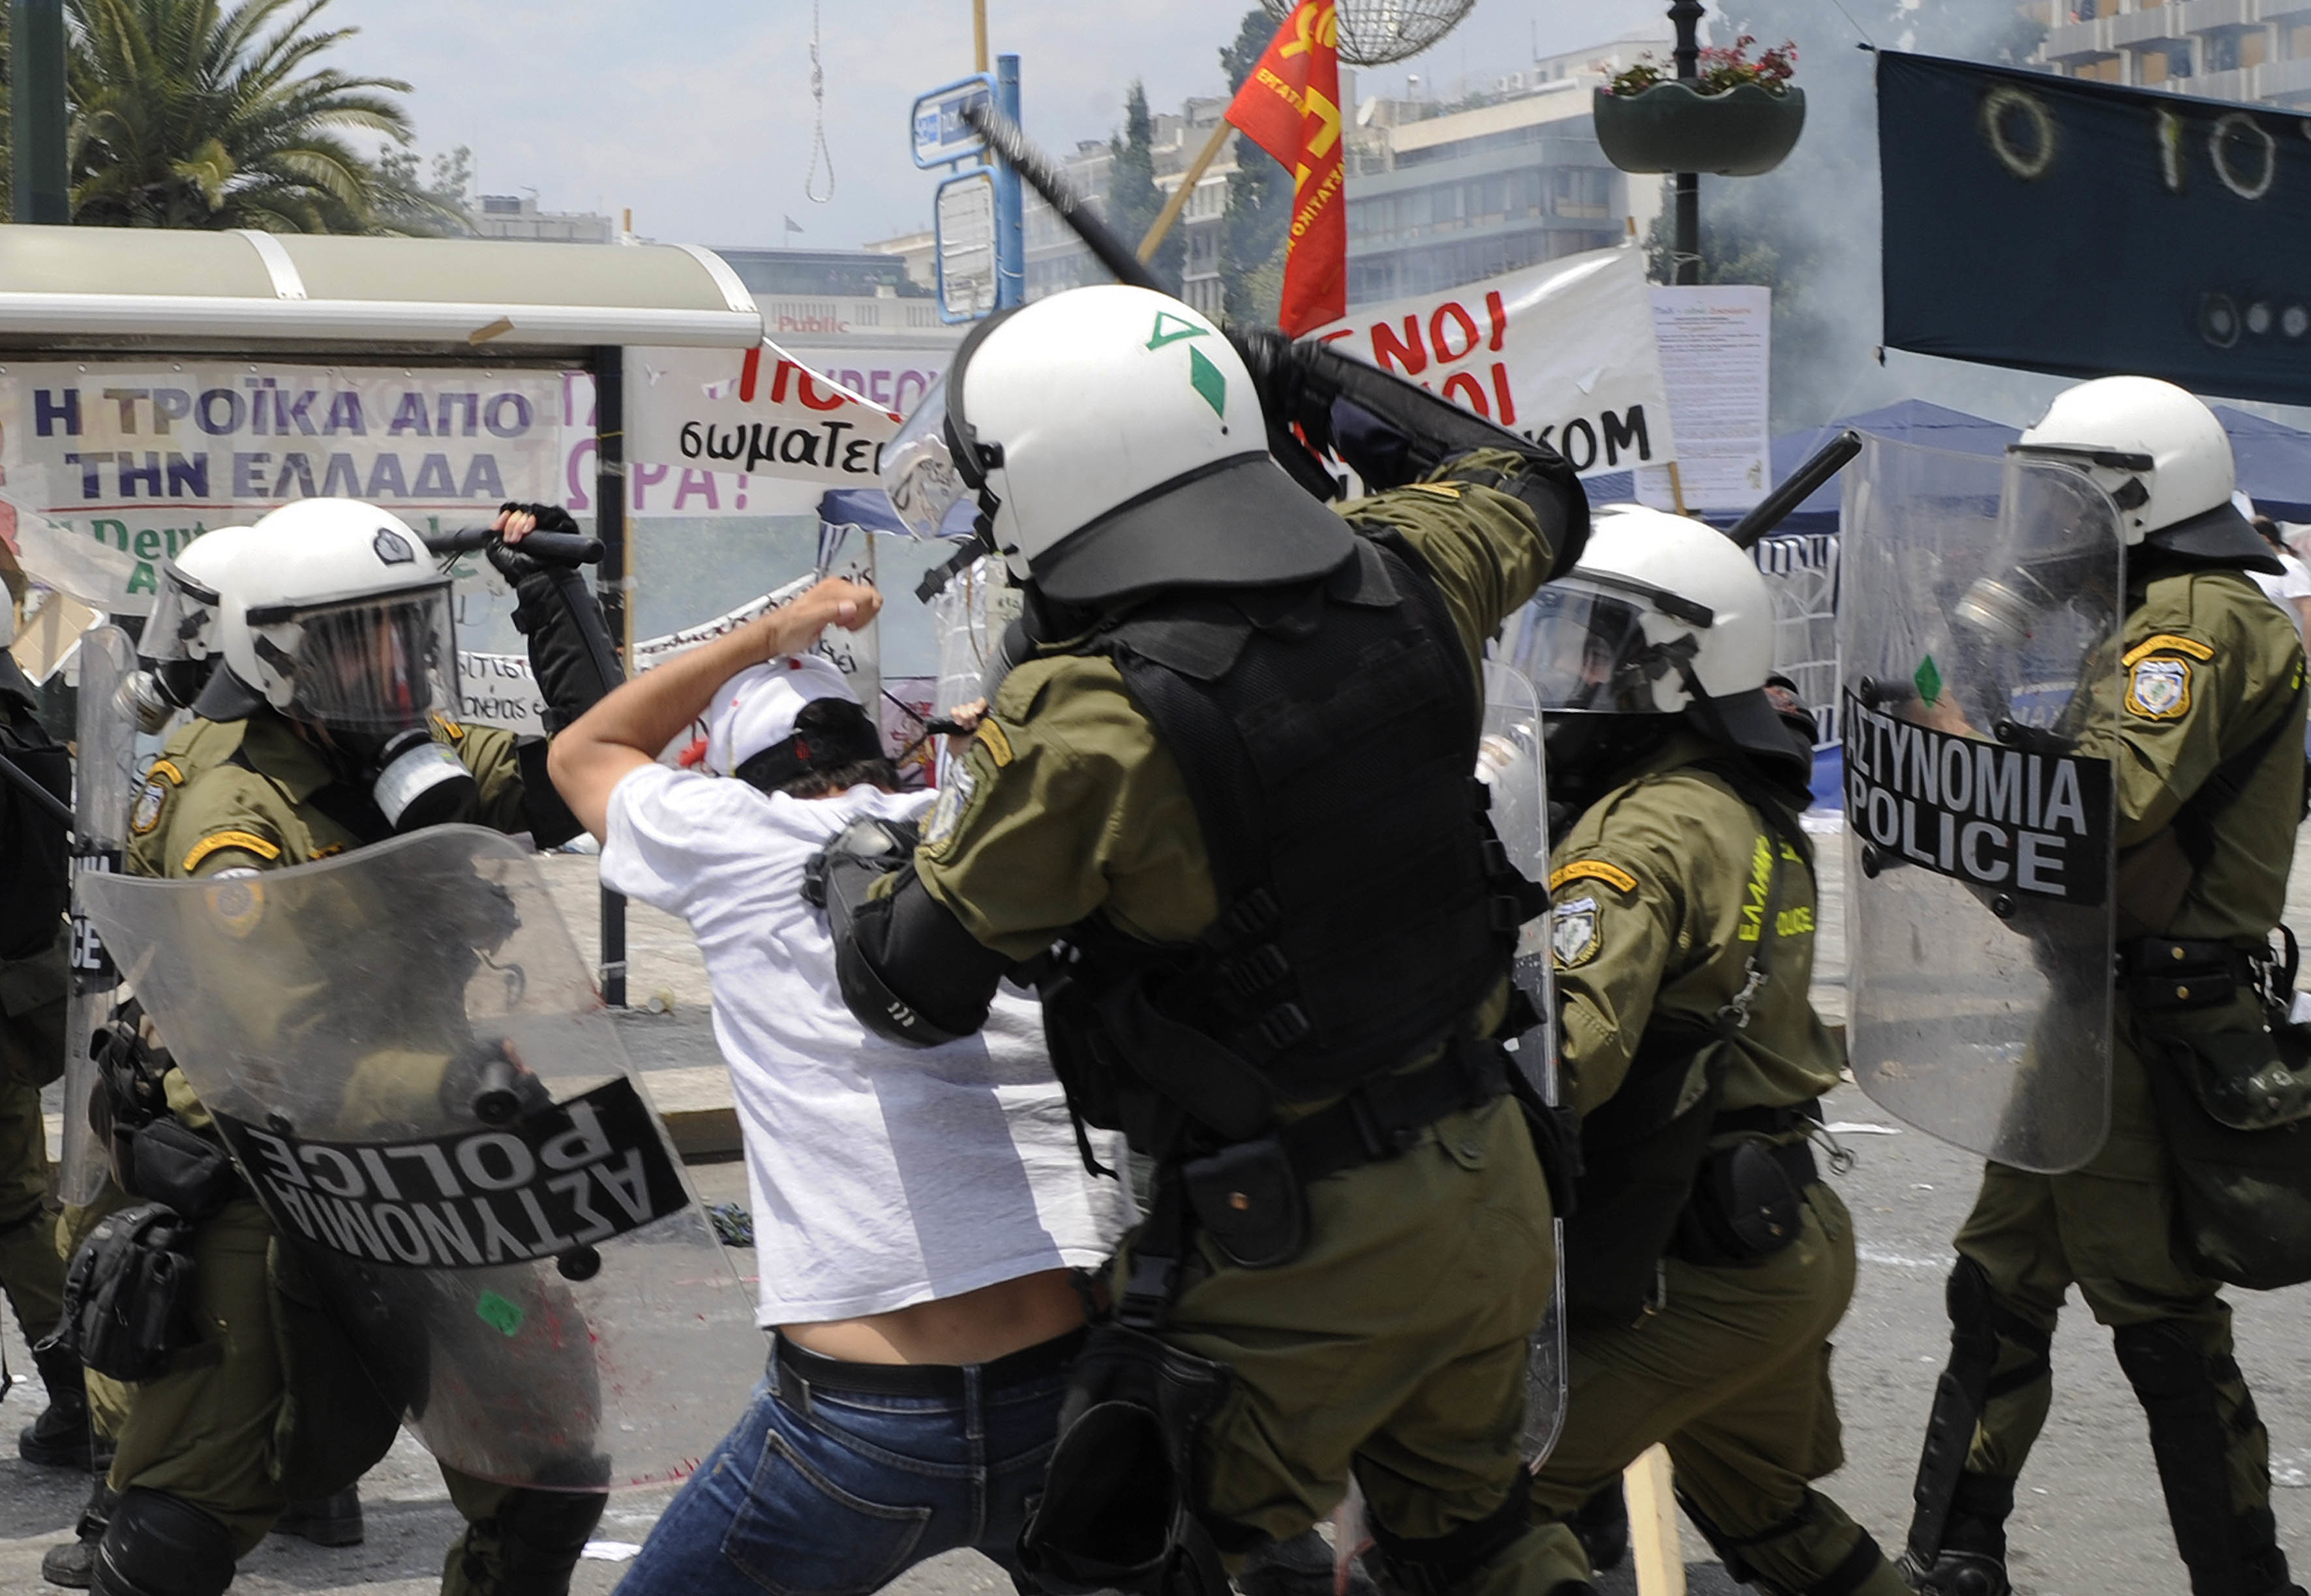 Υπερβολική βία αστυνομικών κατά διαδηλωτών στην Αθήνα καταγγέλλει η Διεθνής Αμνηστία